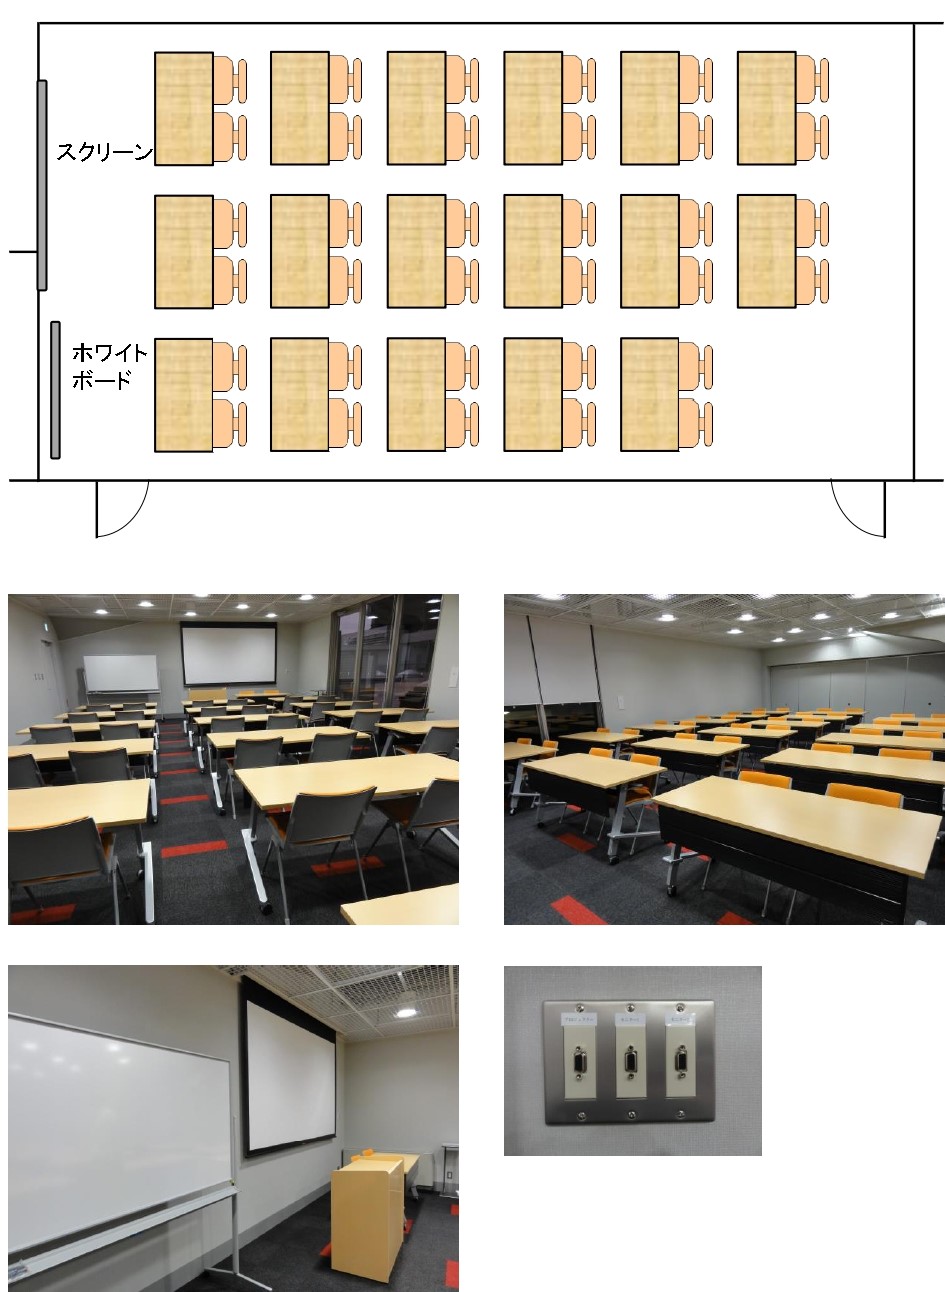 会議室1には机が3台横並びであり、それが5列あり、その後方に2台の机がある。椅子は机1台に対して2脚。会議室前方にスクリーンとホワイトボードがある。